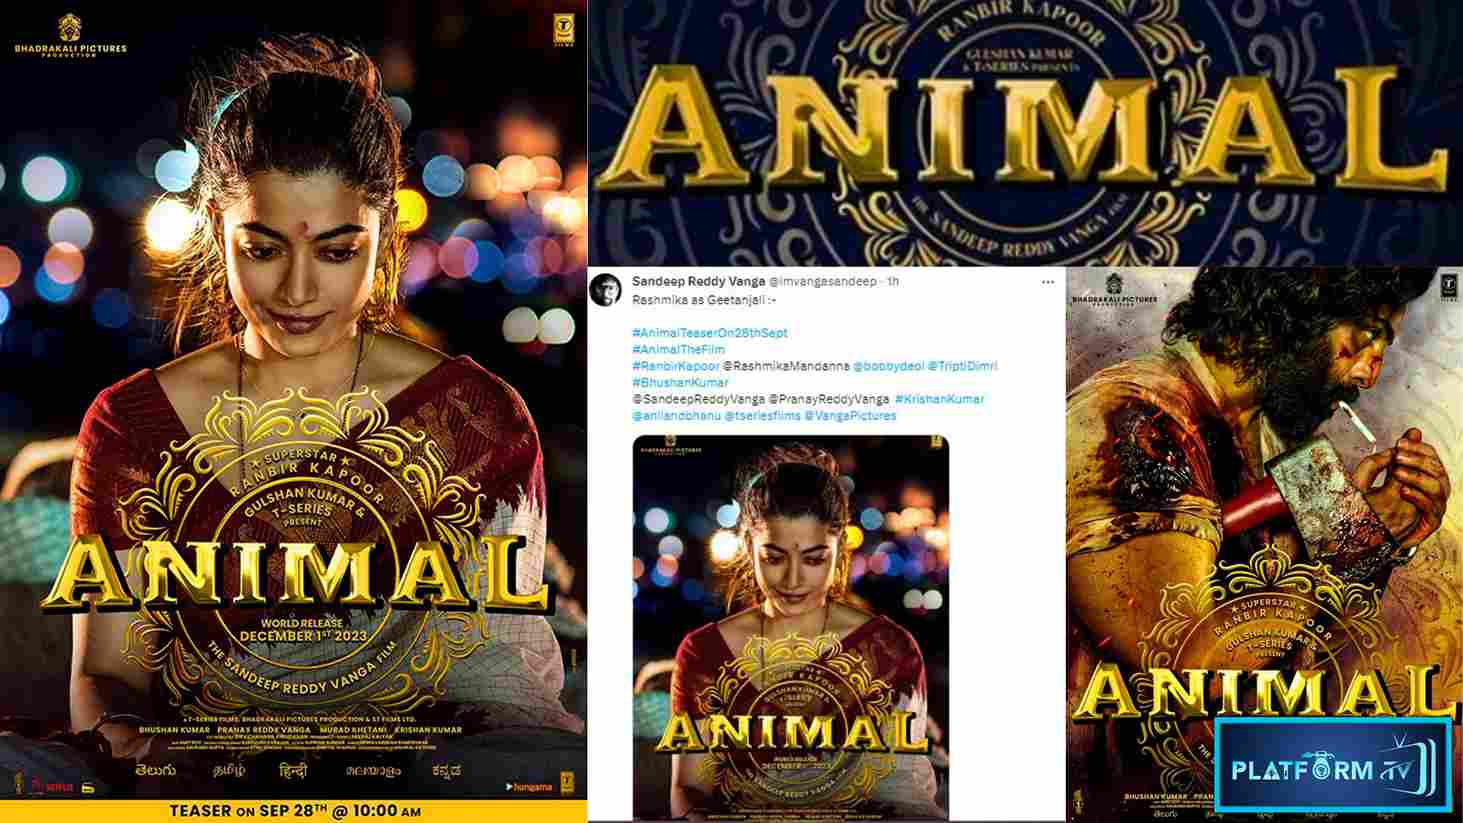 Animal Movie Rashmika First Look - Platform Tamil